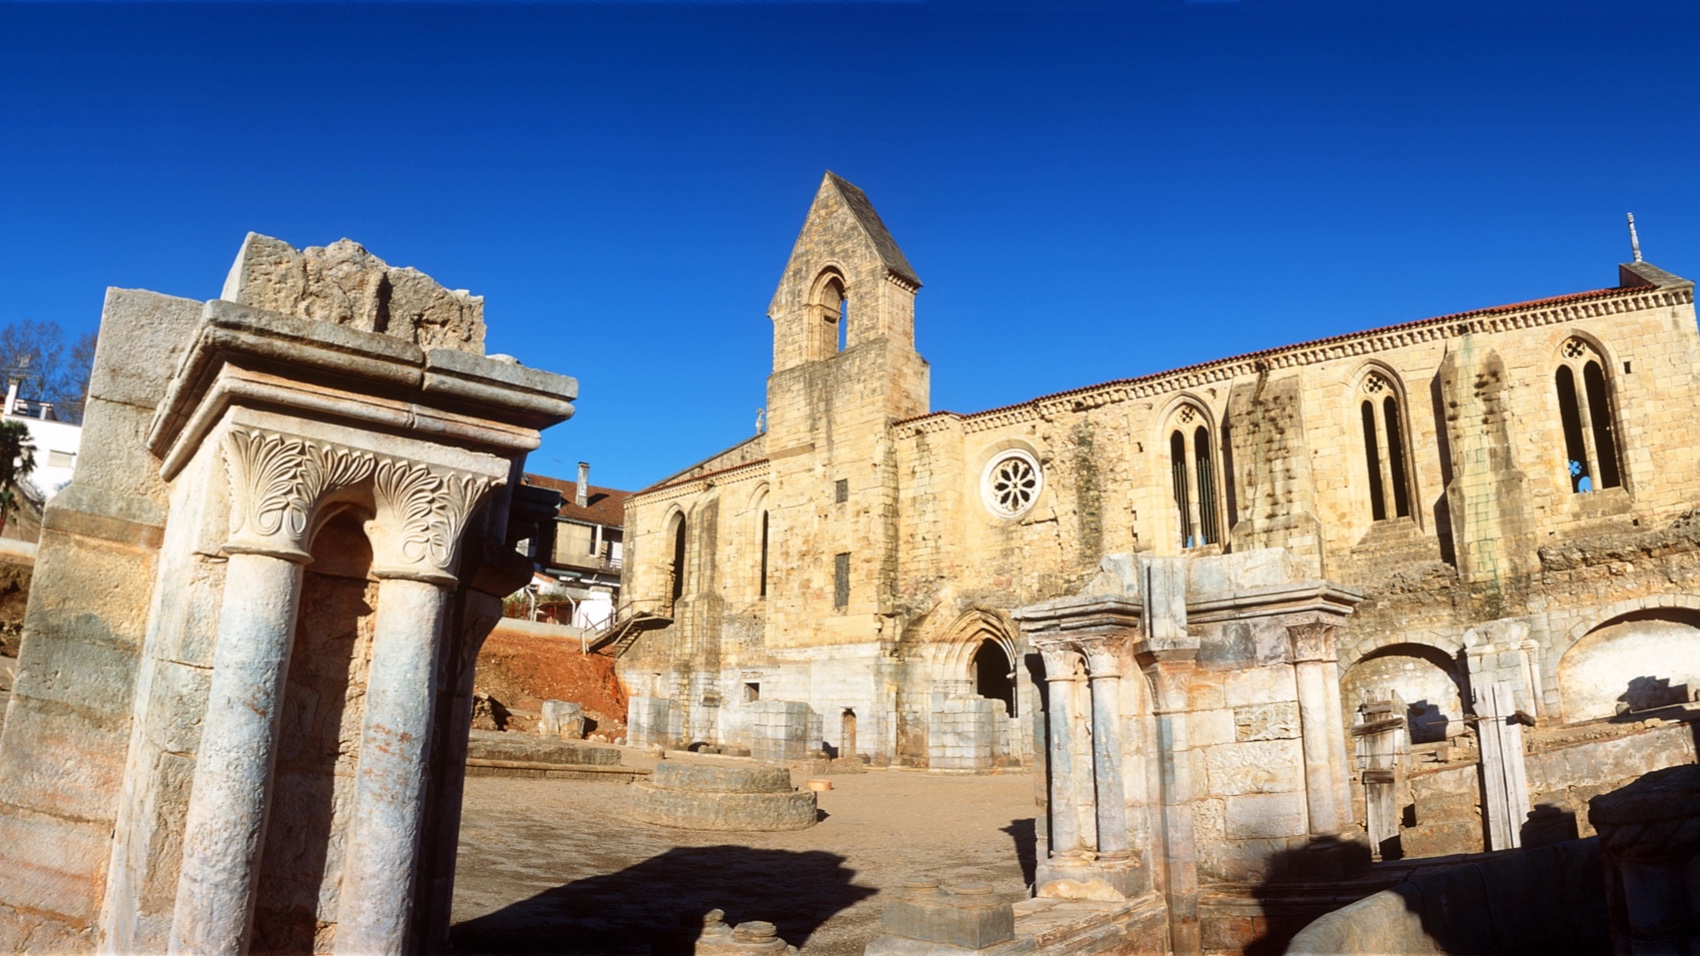 Turismo Centro de Portugal - Coimbra Conimbriga Past Immersion monastery outside